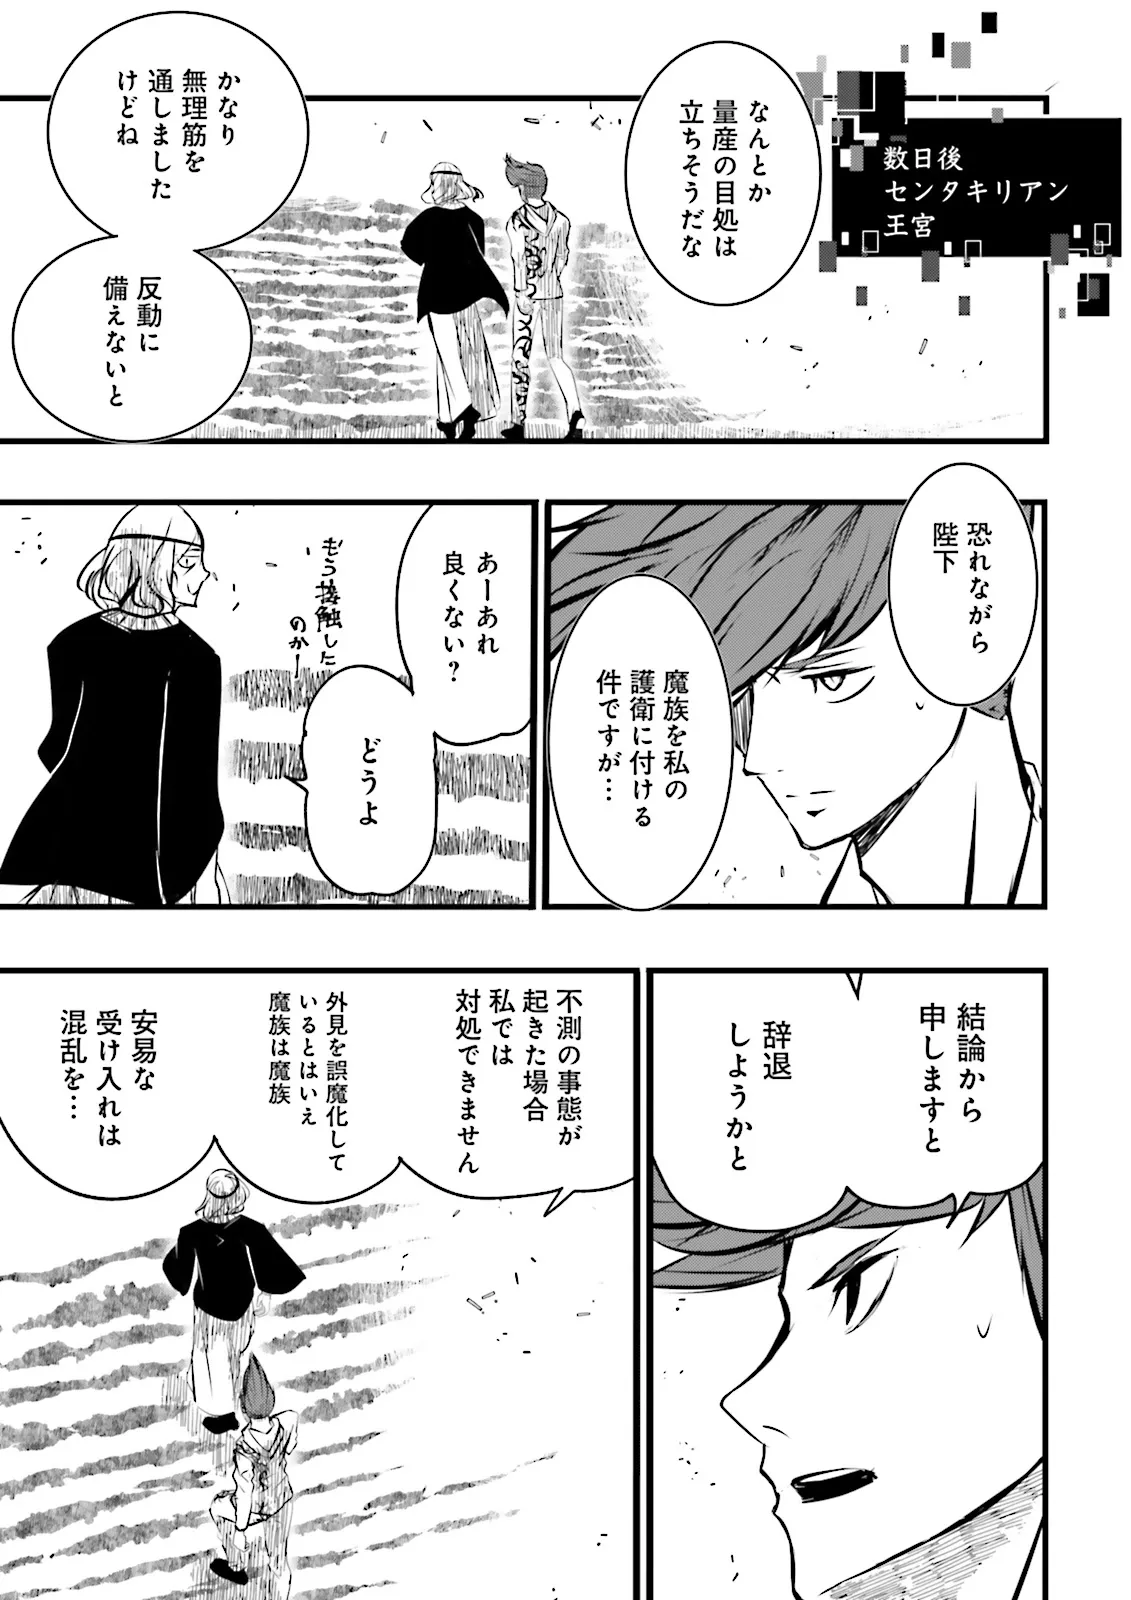 Sukiru Ga Nakereba Level wo Ageru ~ 99 Ga Kansuto No Sekai De Reberu 800 Man Kara Sutato ~ - Chapter 40.4 - Page 1